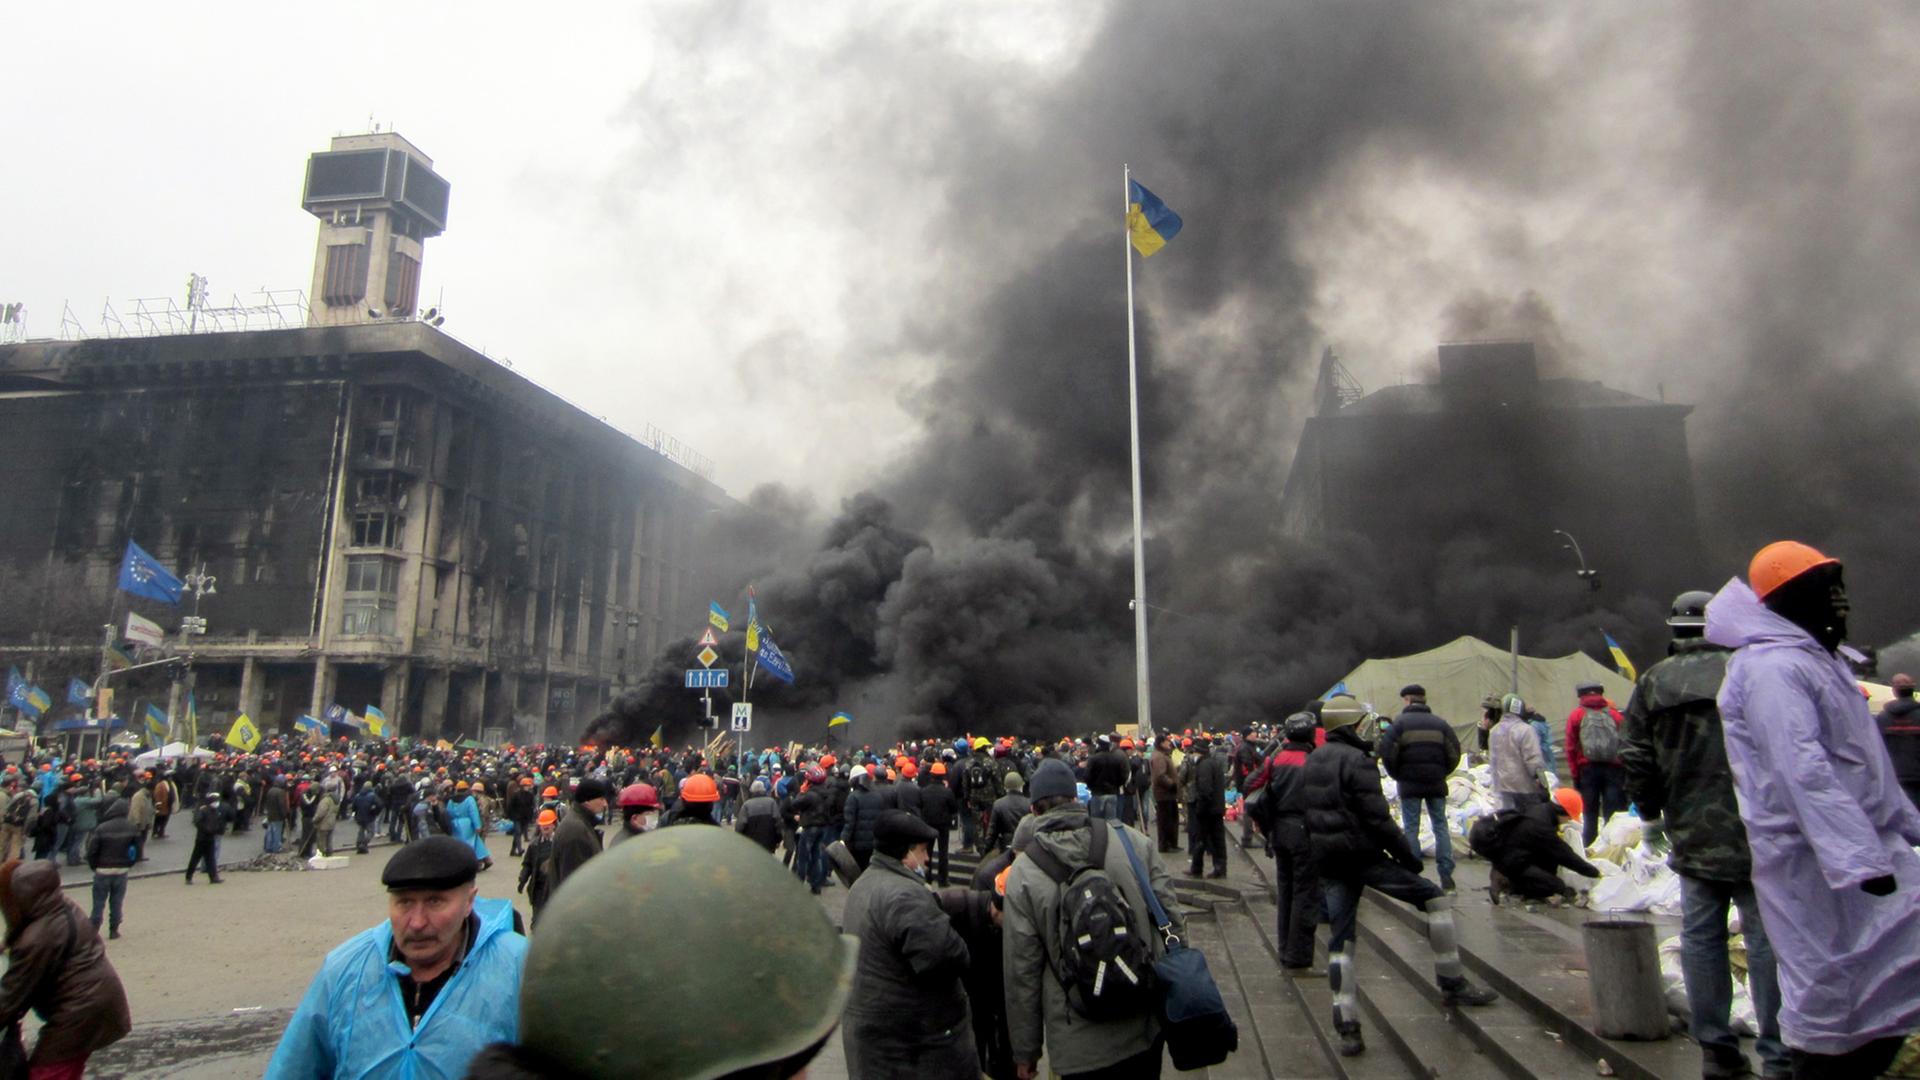 Am 20.02.2014 kam es auf dem Maidan zu Auseinandersetzungen zwischen Polizei und Demonstranten.